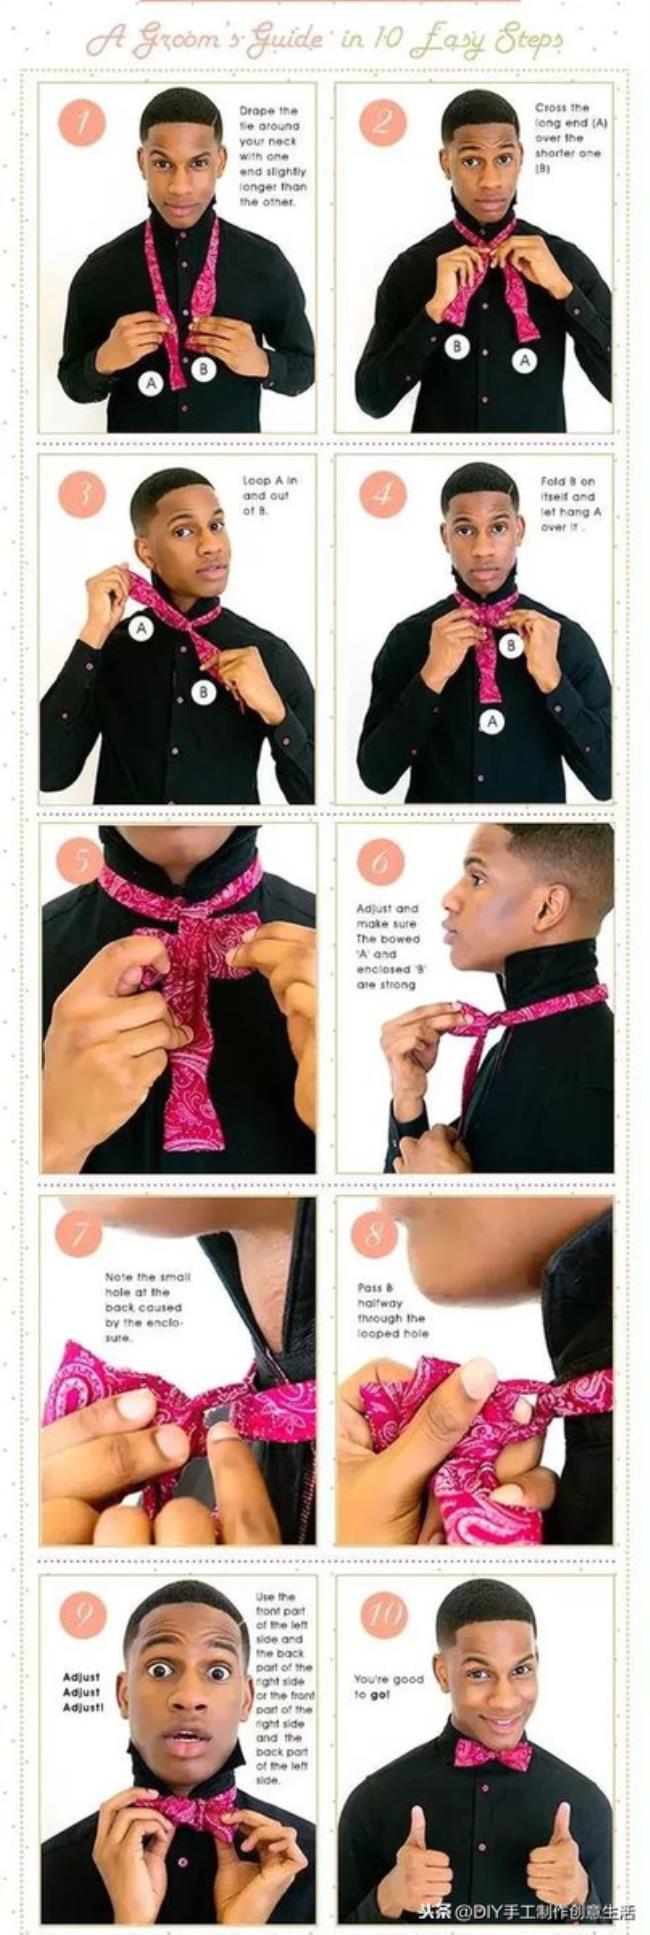 打领带的方法（这样打领带才是高水准）